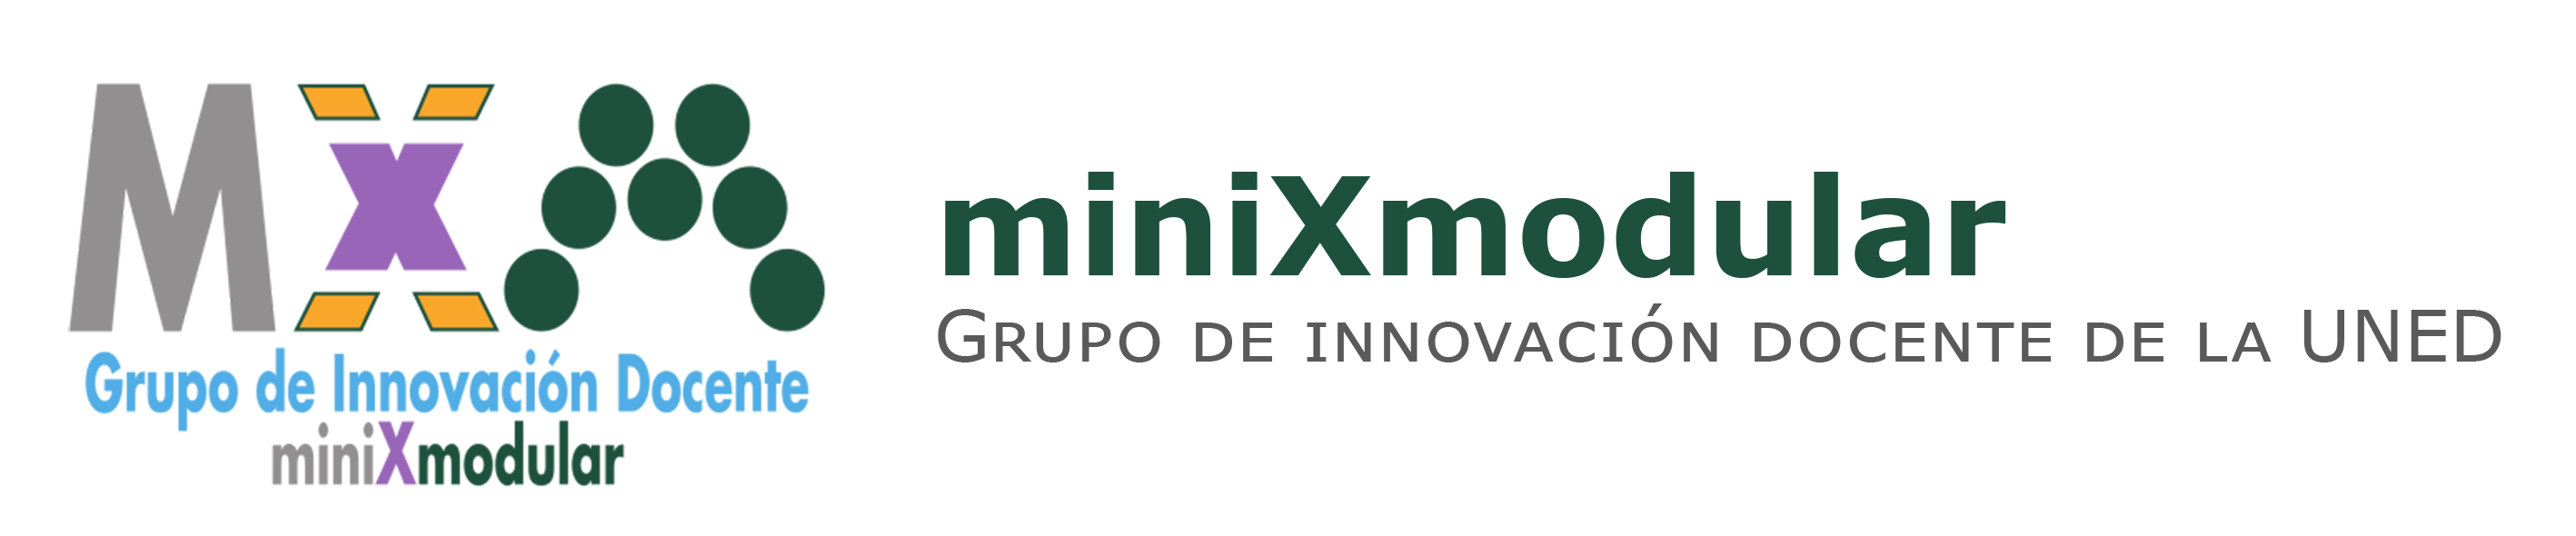 Logo de miniXmodular junto al texto "miniXmodular, Grupo de innovación docente de la UNED"